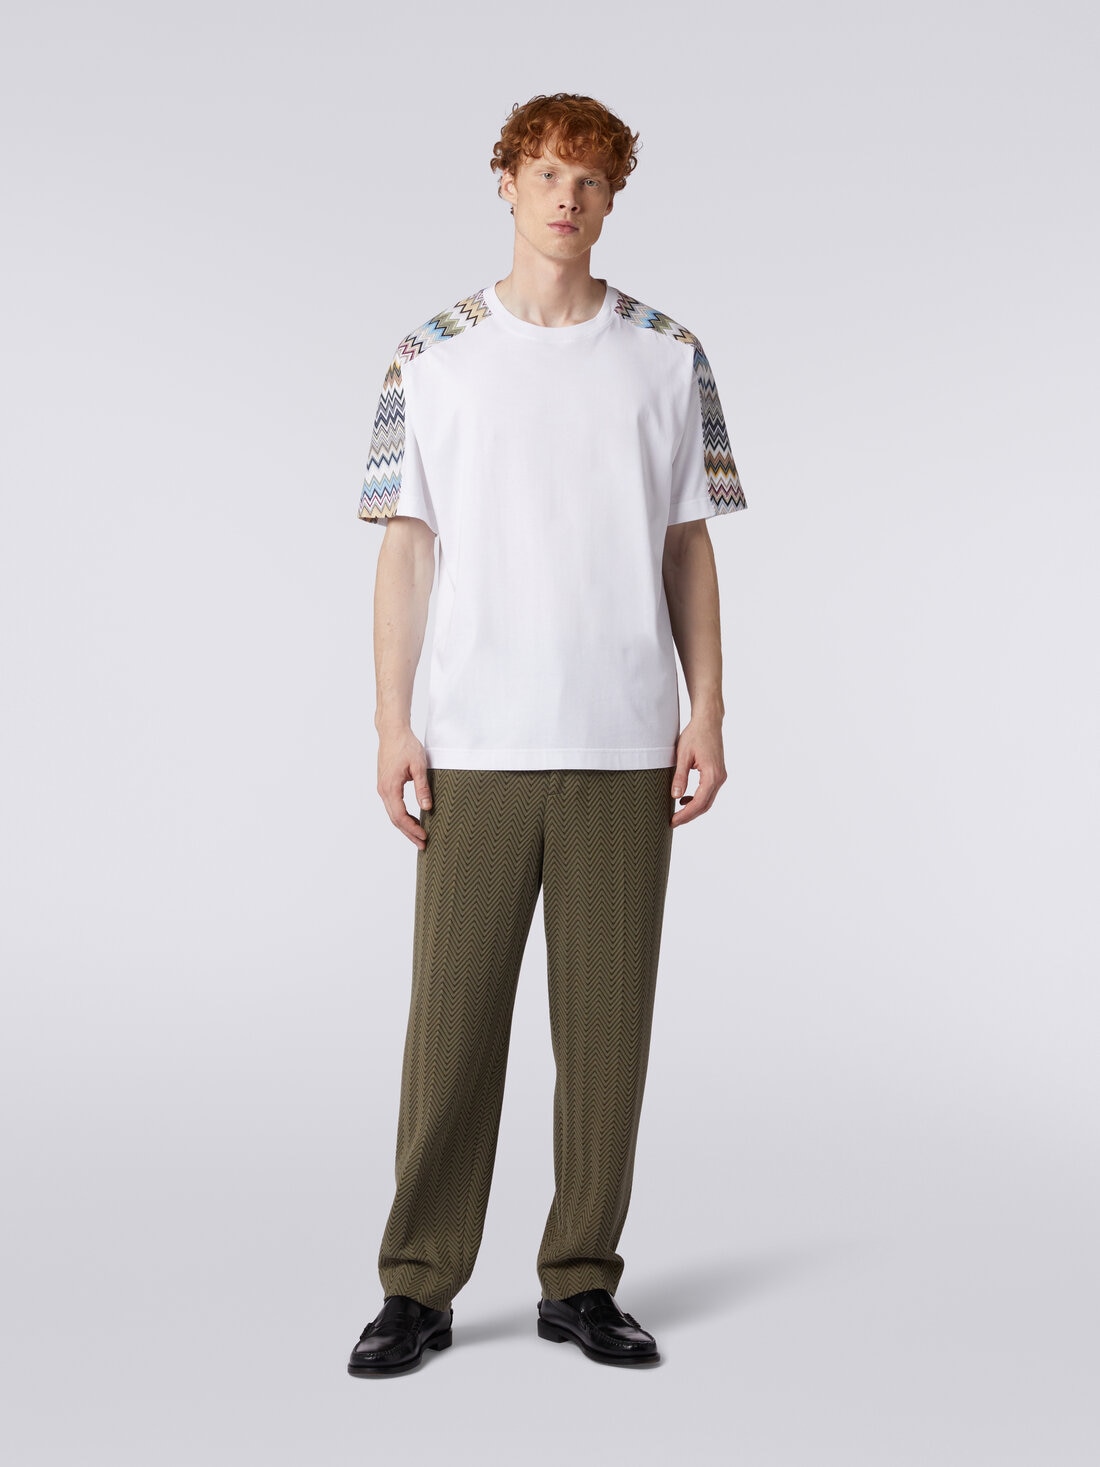 Camiseta de algodón con inserciones zigzag, Multicolor  - US24SL08BJ00IKS01AY - 1